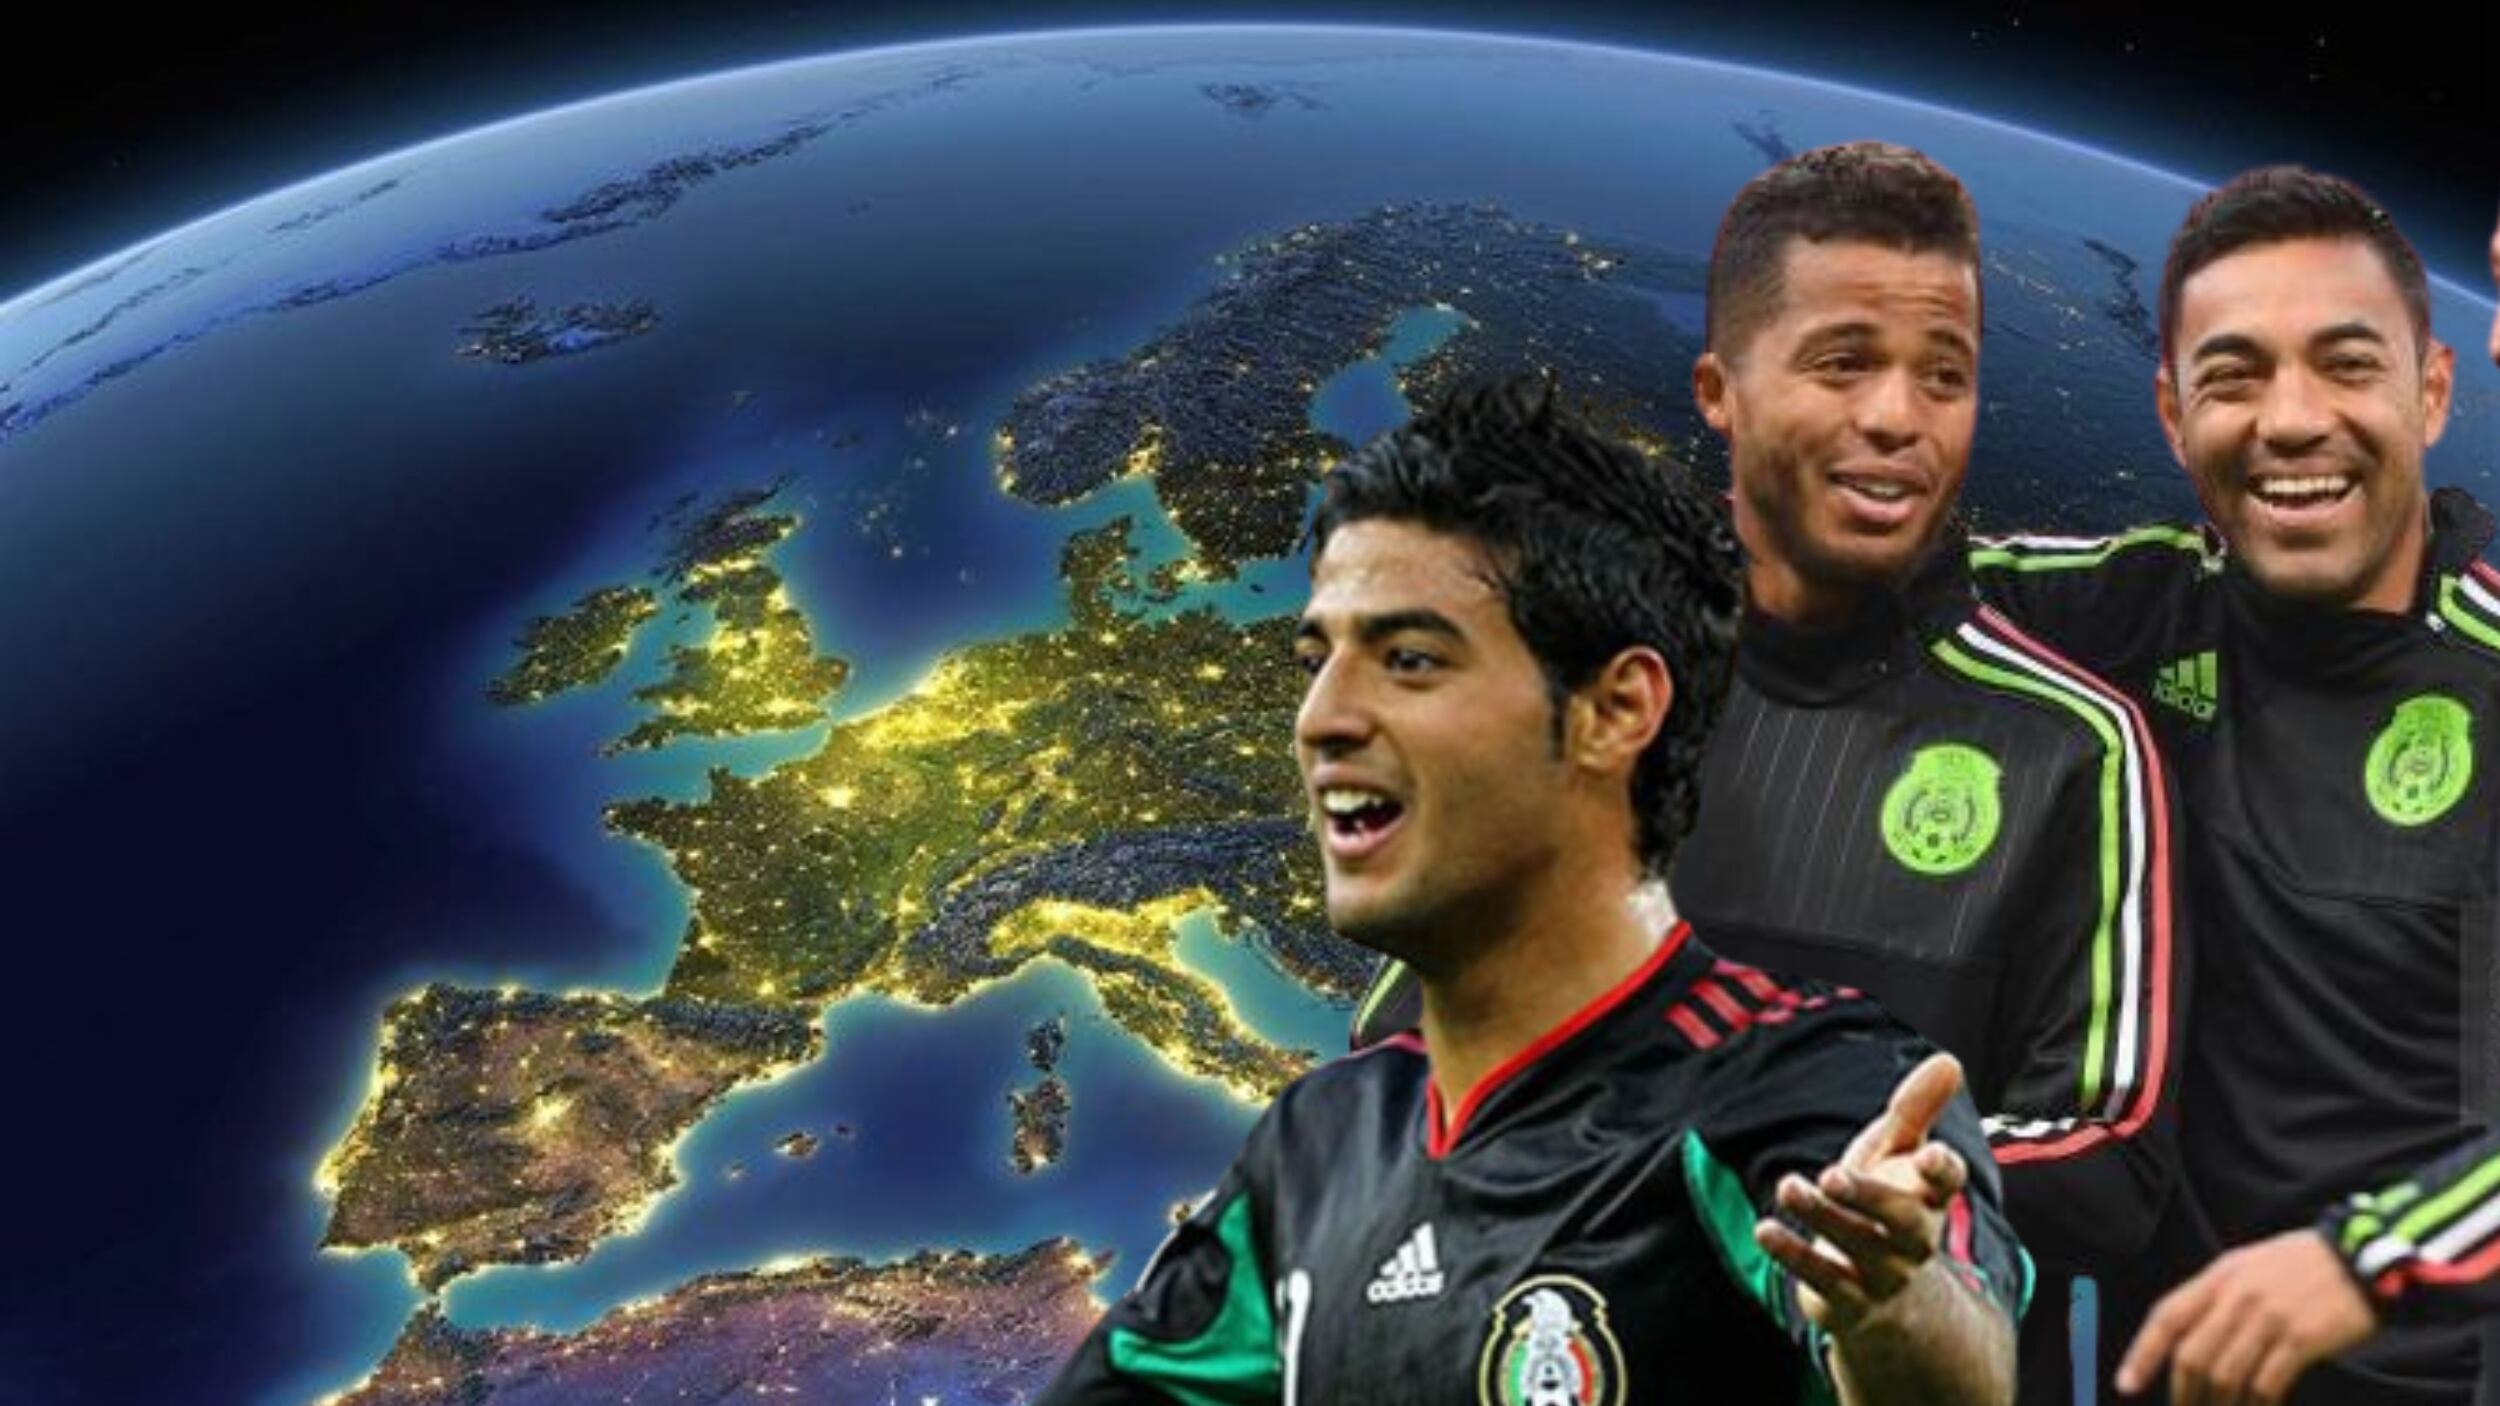 El 1er jugador mexicano que tiene a cargo un equipo profesional en Europa, es su presidente